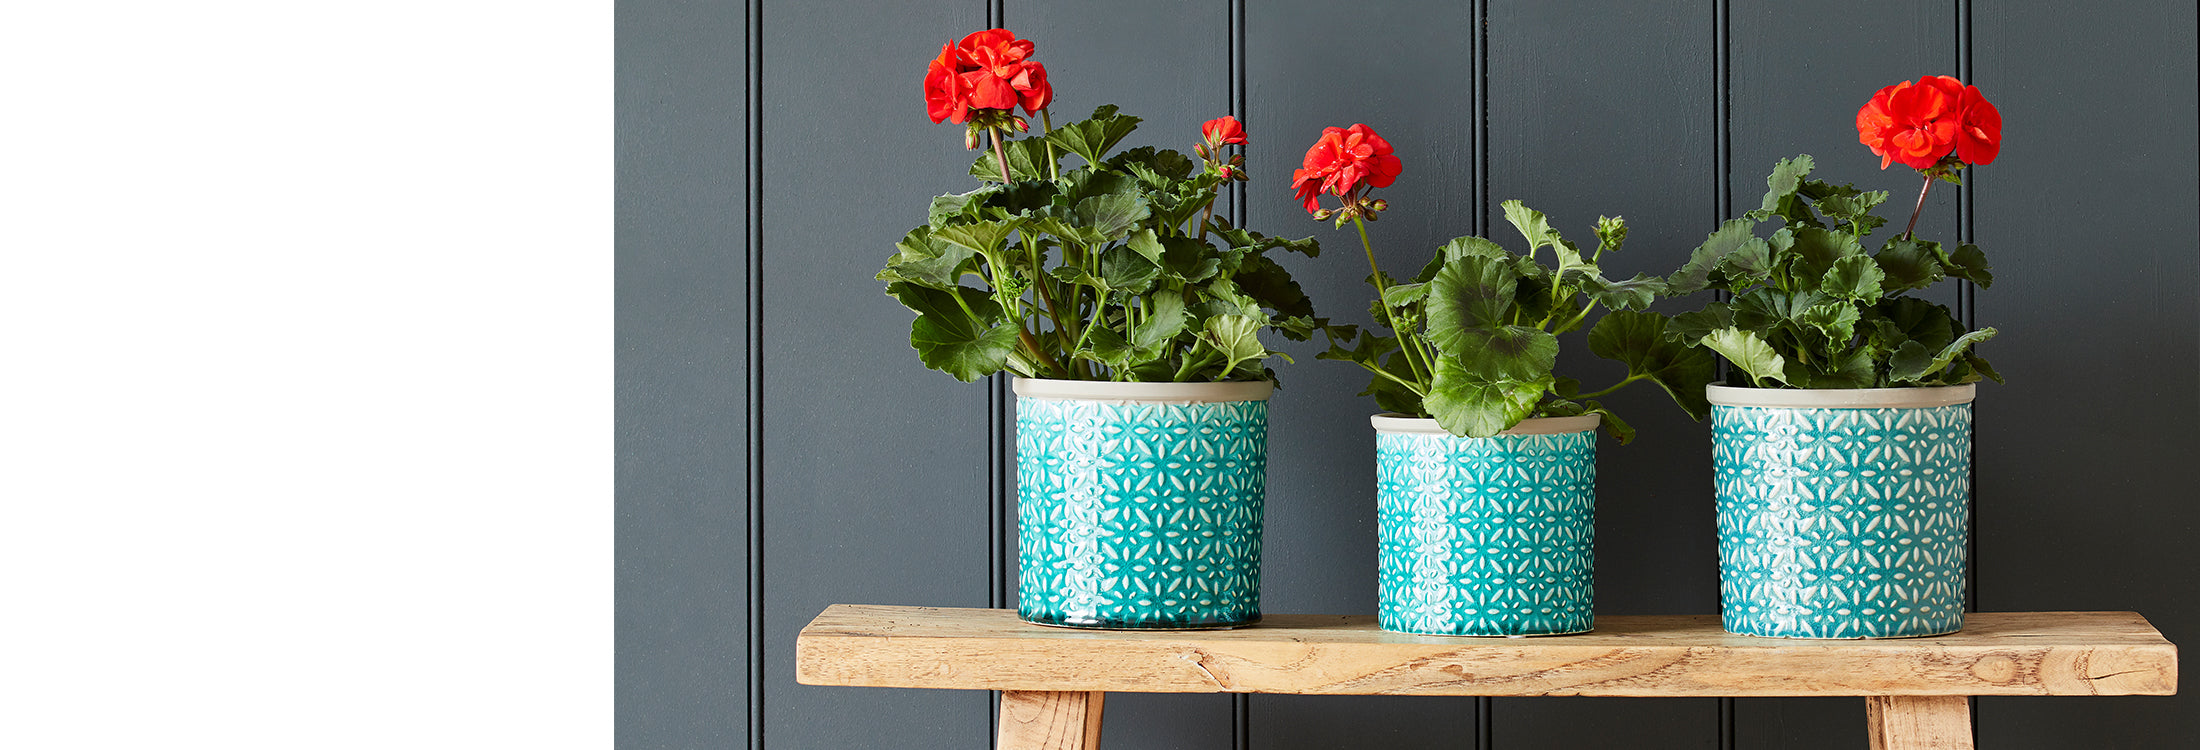 Trade Indoor Plant Pots & Vases